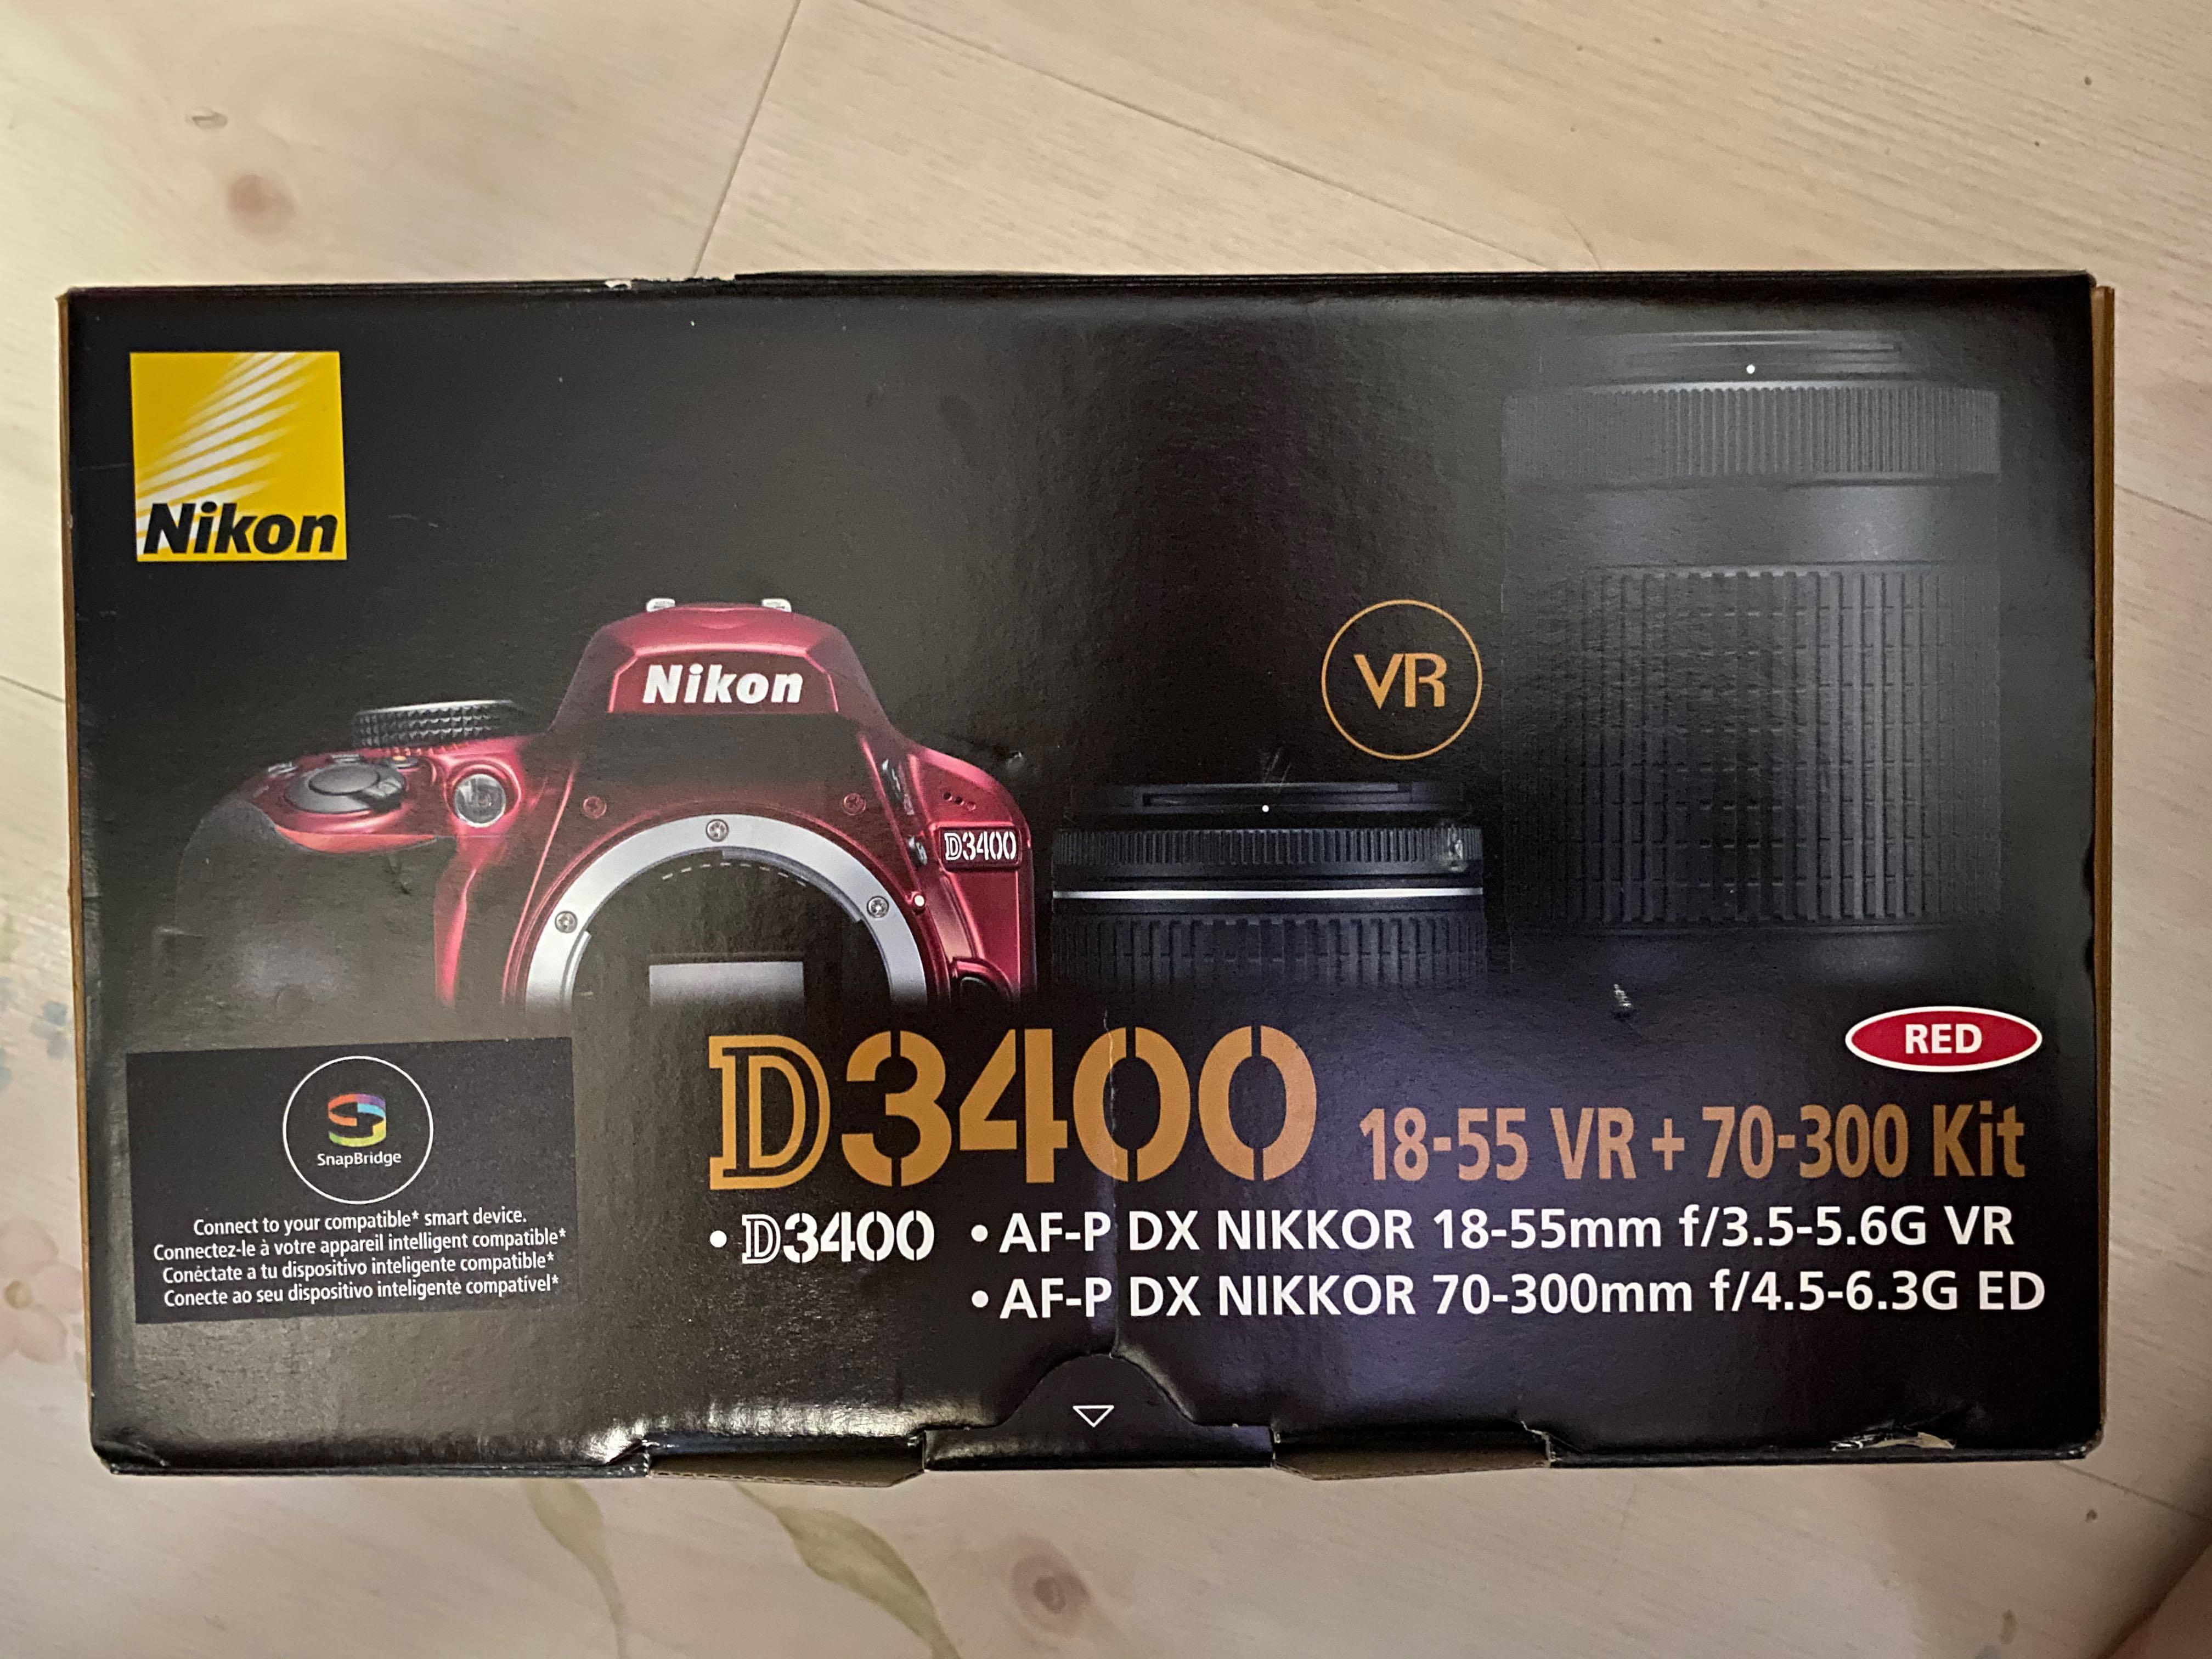 Nikon D3400 2 Lenses: 18-55 VR + 70-300 Kit